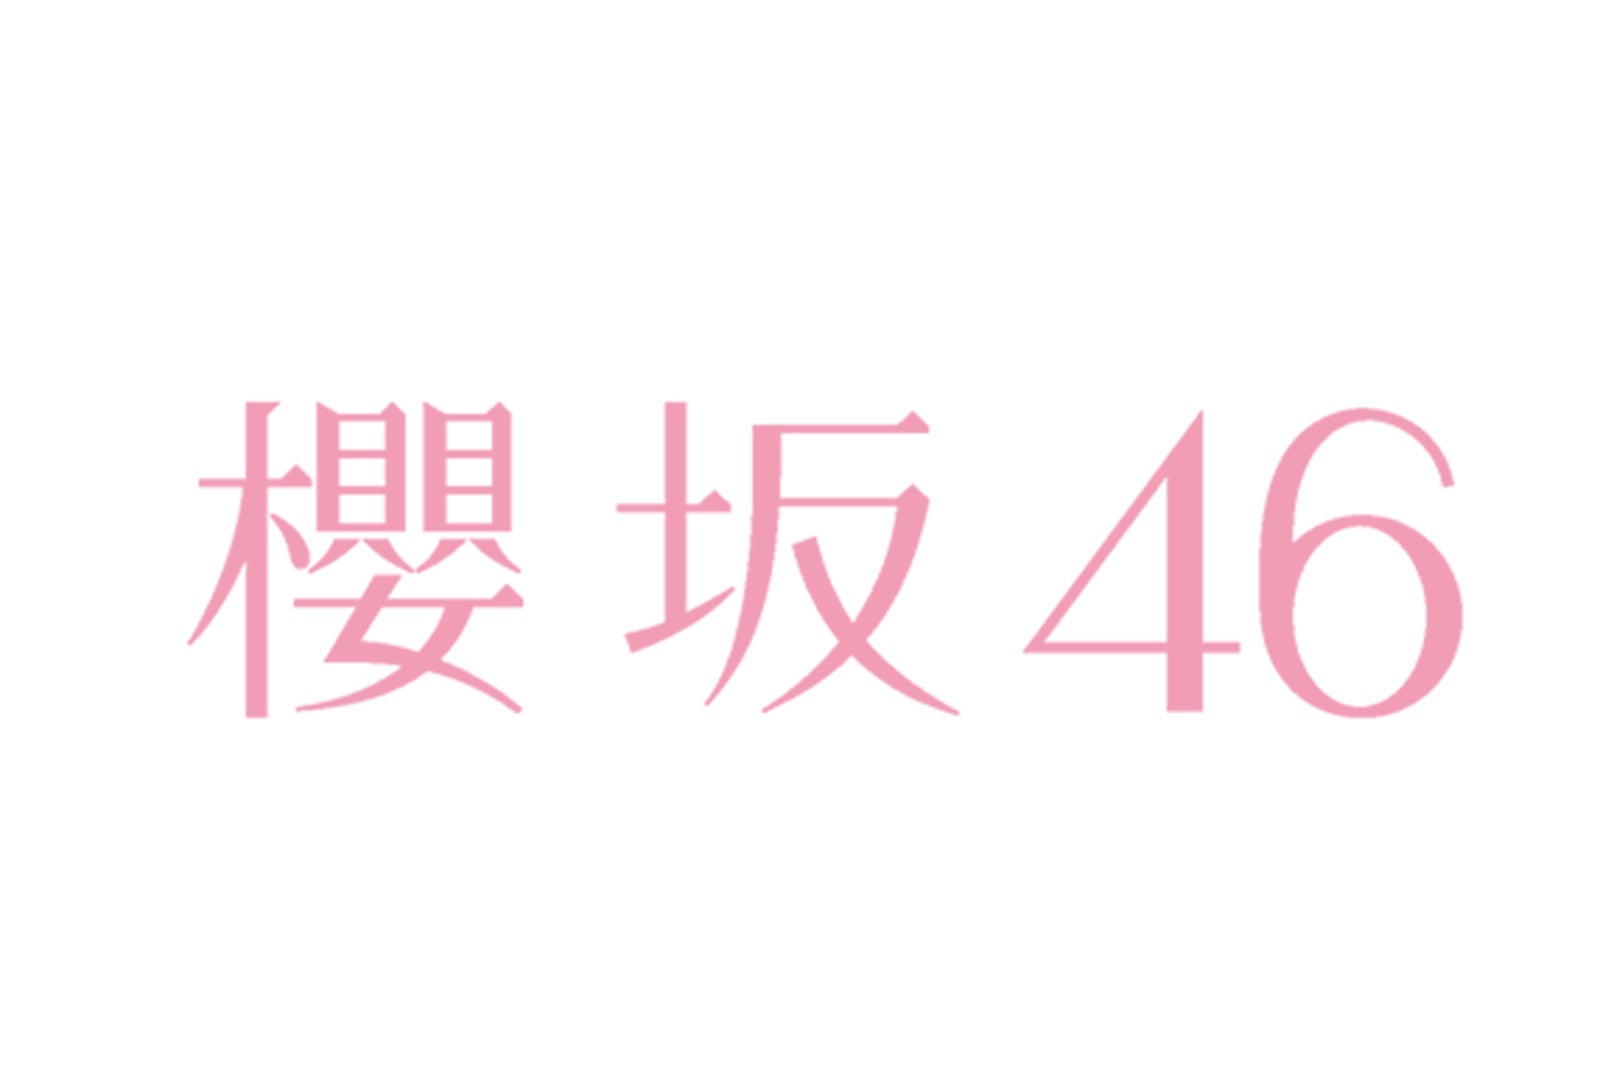 欅坂46新グループ名 櫻坂46 ロゴ解禁 キャプテン菅井友香コメント到着 モデルプレス